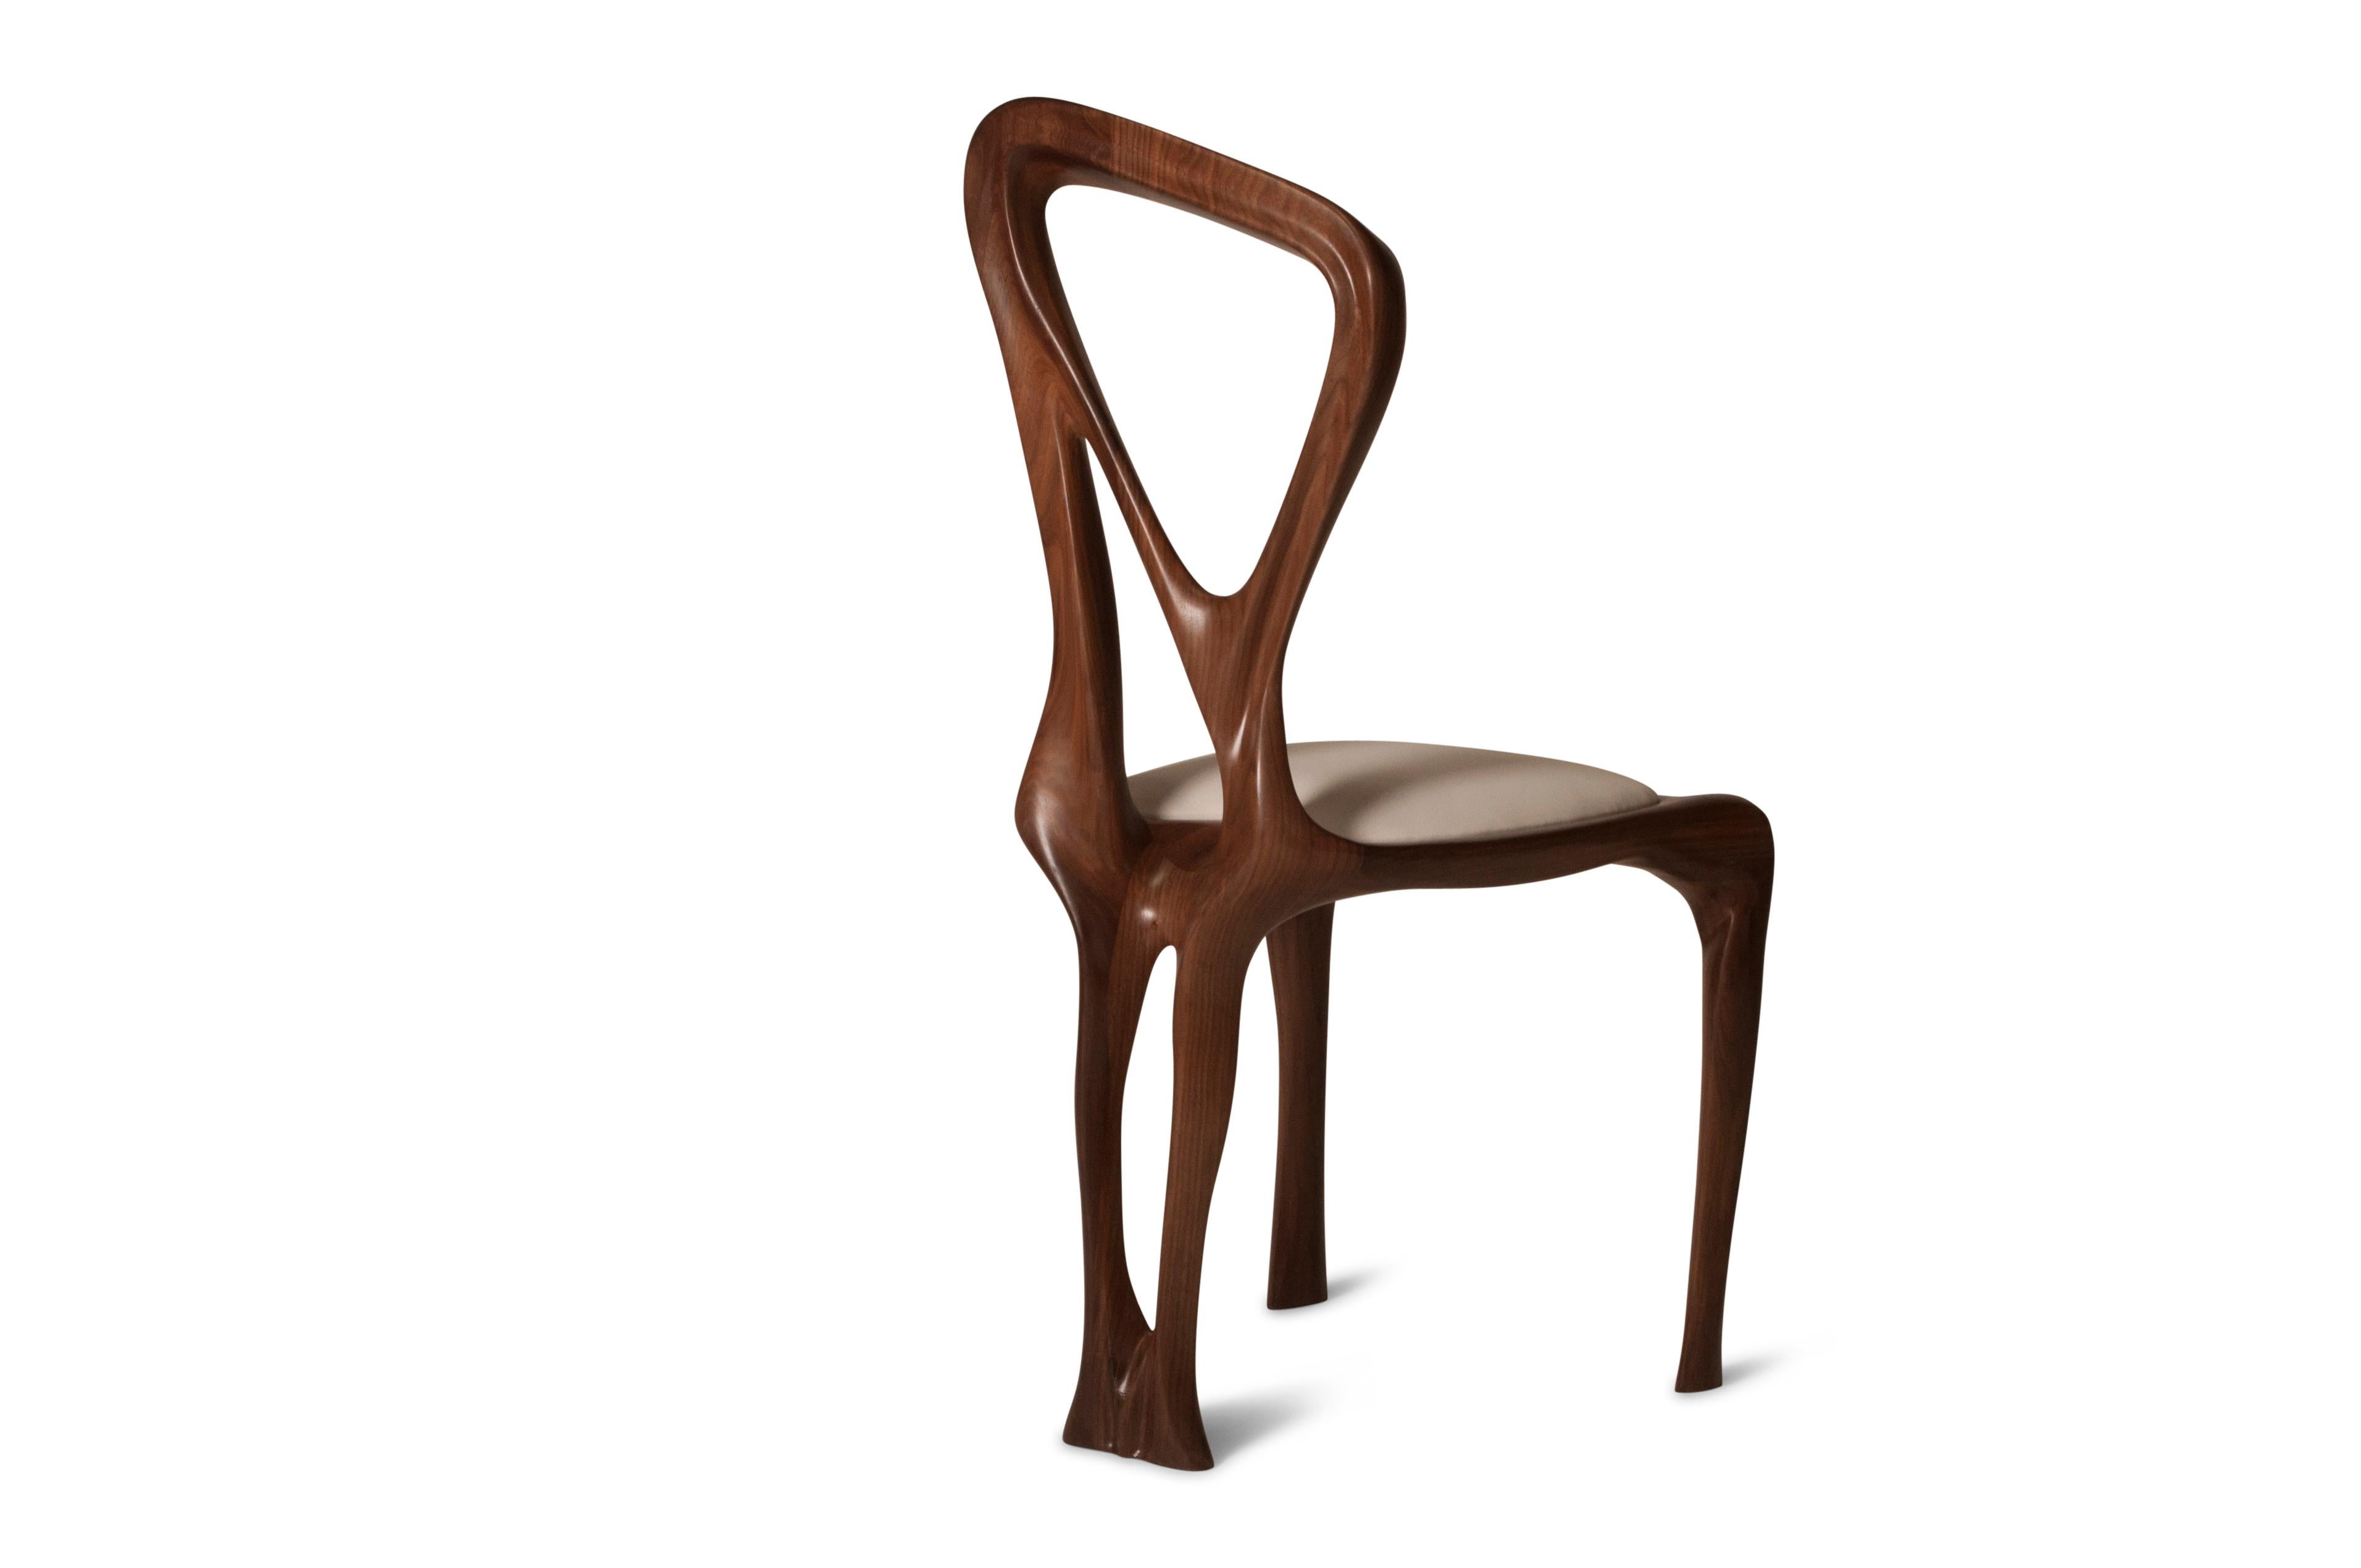 Chaise de salle à manger conçue par Amorph en bois de frêne massif. Il est en ébène teinté.
Dimension : 38